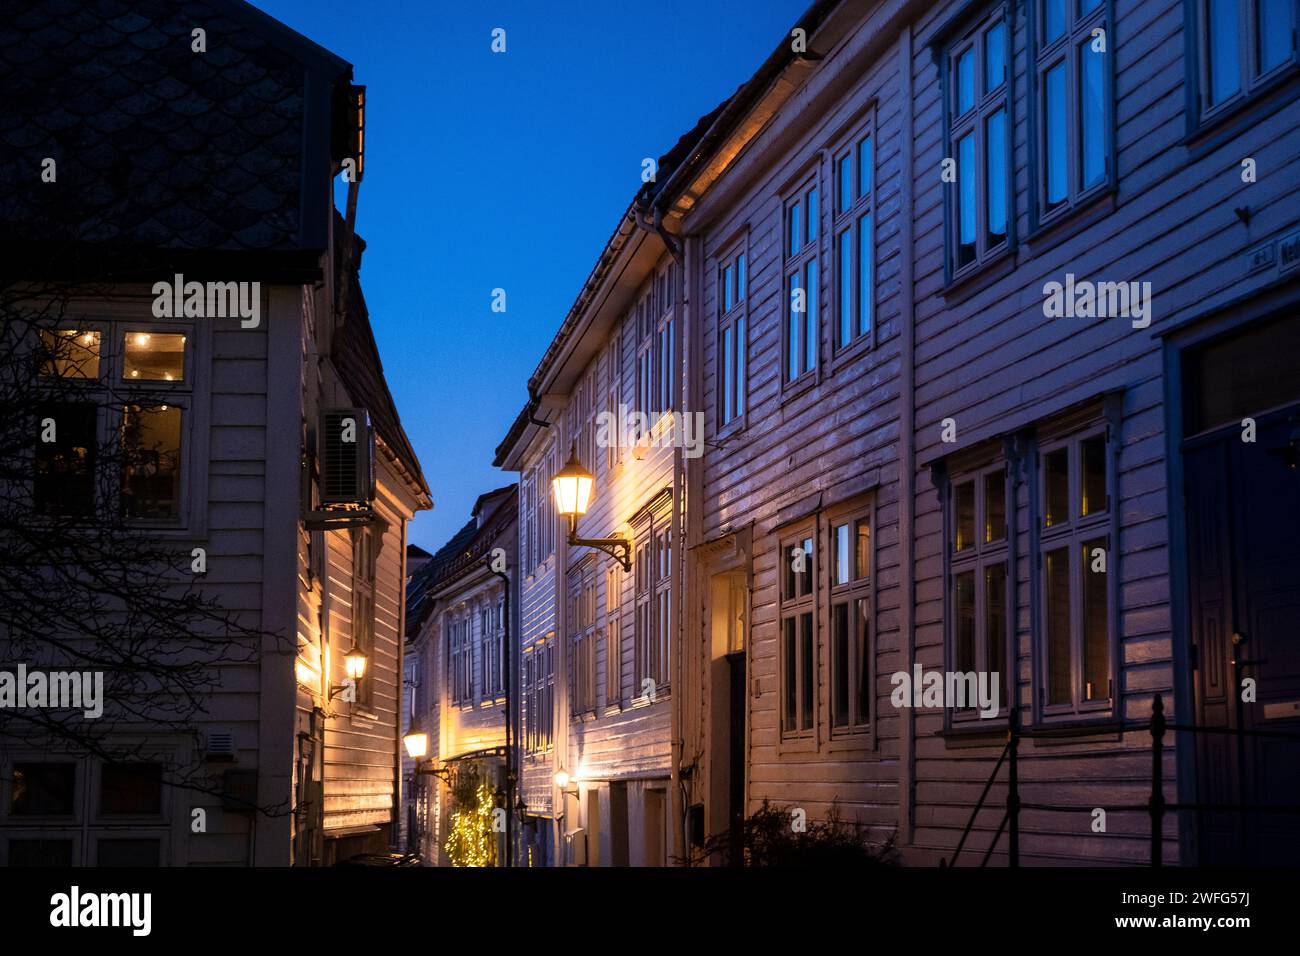 Narrow street in the Bergenhus neighborhood of Bergen, Norway Stock Photo